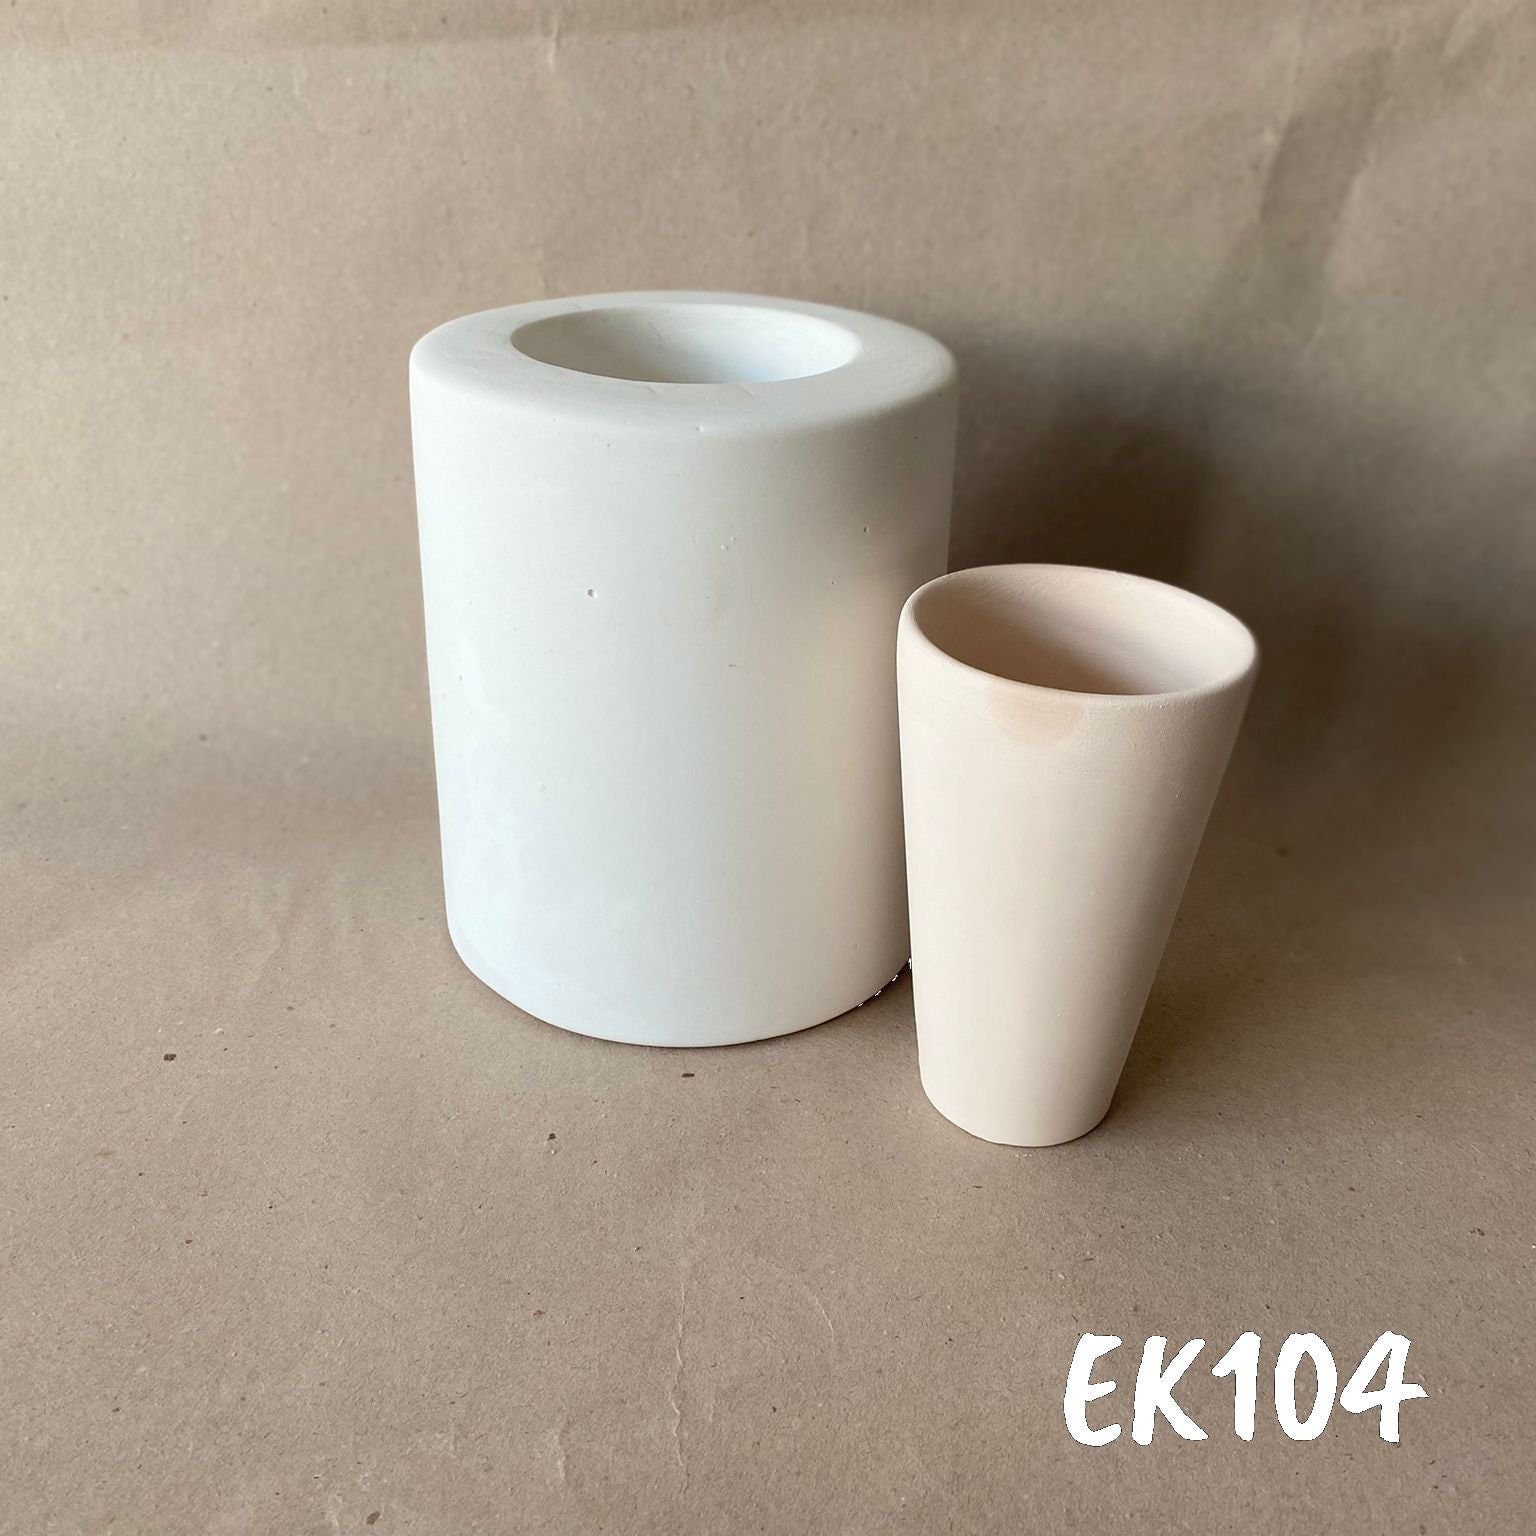 Plaster Molds Making for Ceramic Reproduction - 137º Ceramic Art